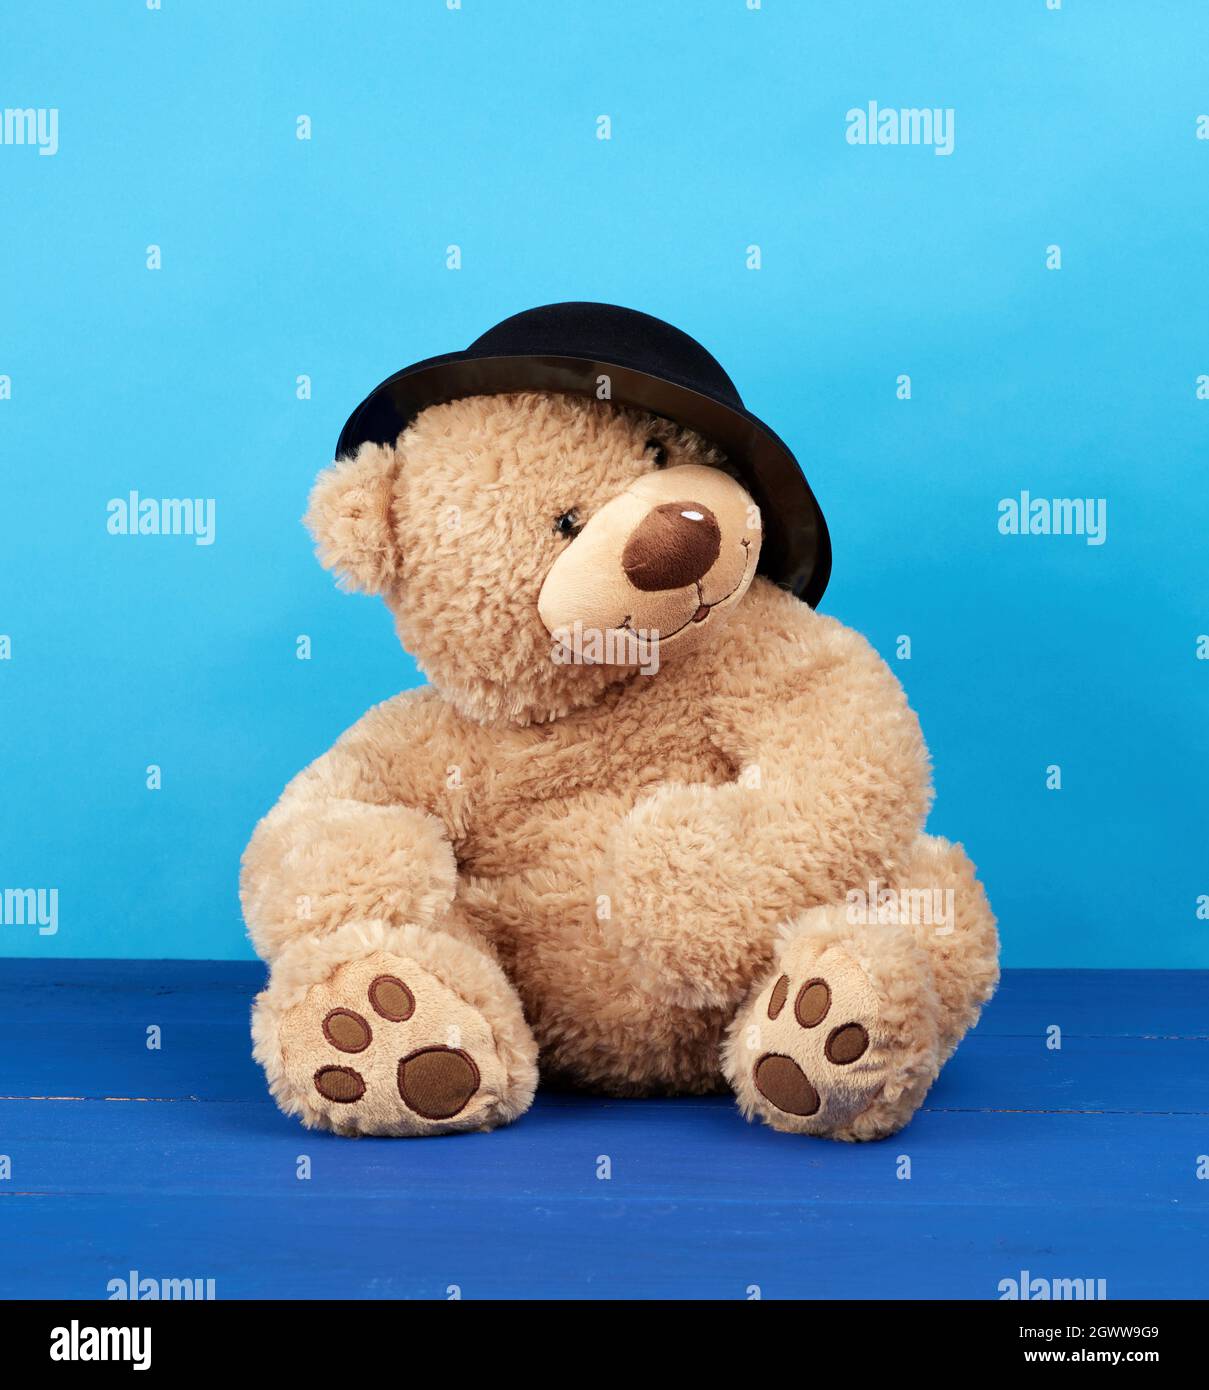 Großer Brauner Teddybär in Einem schwarzen Hut auf Einem blauen Hintergrund  Stockfotografie - Alamy